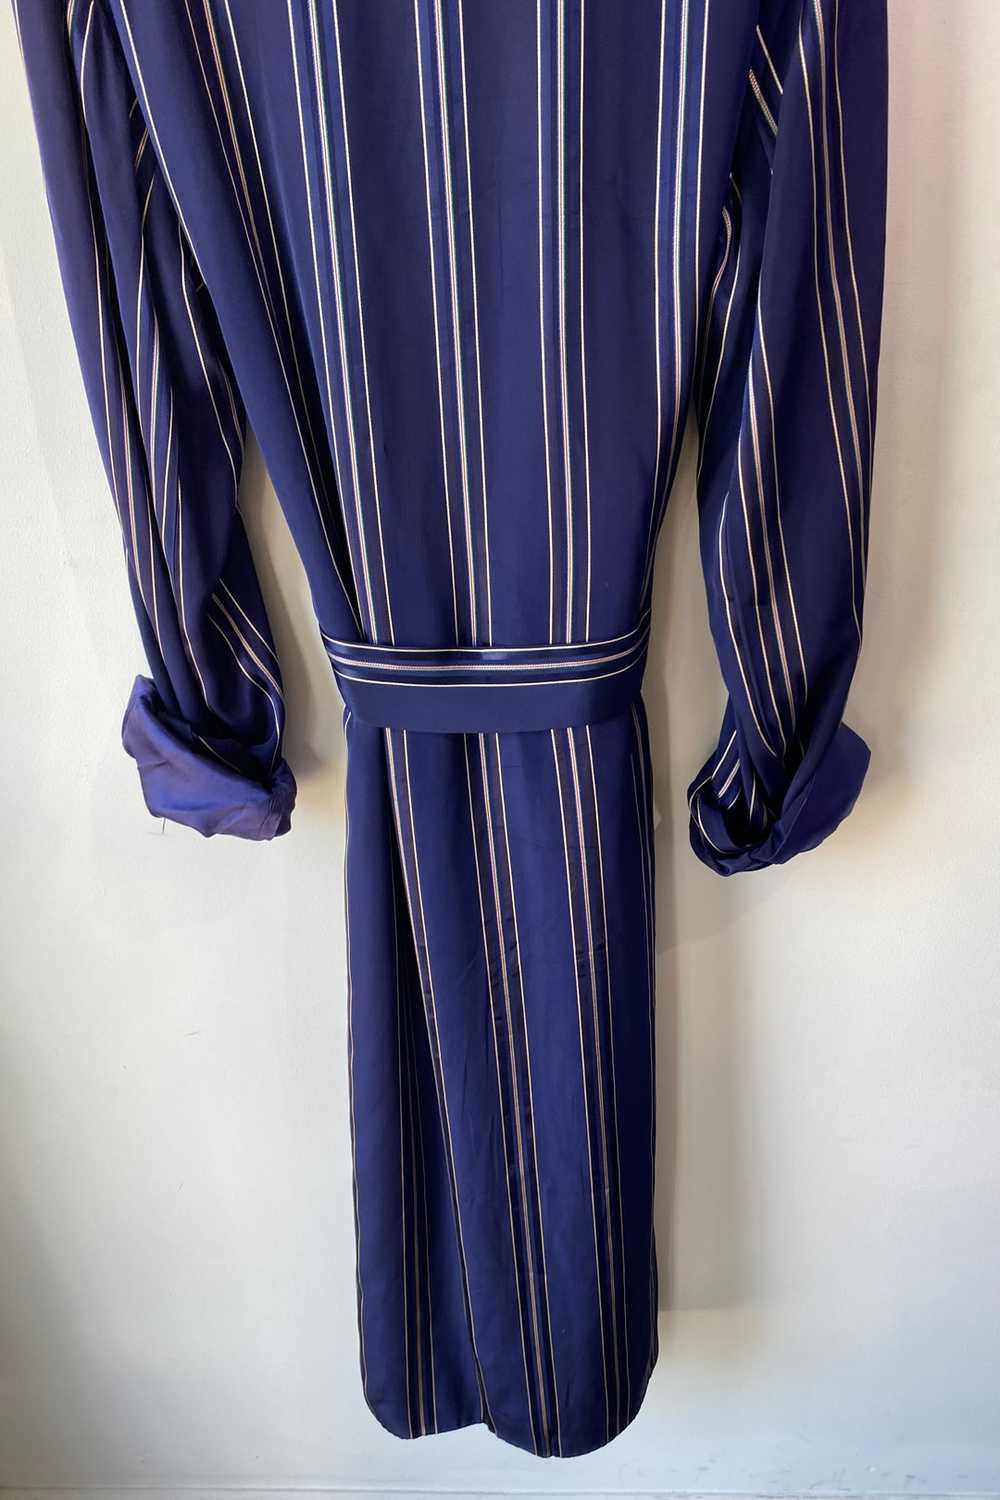 Vintage Broadmoor Navy Blue Silk Robe - image 4